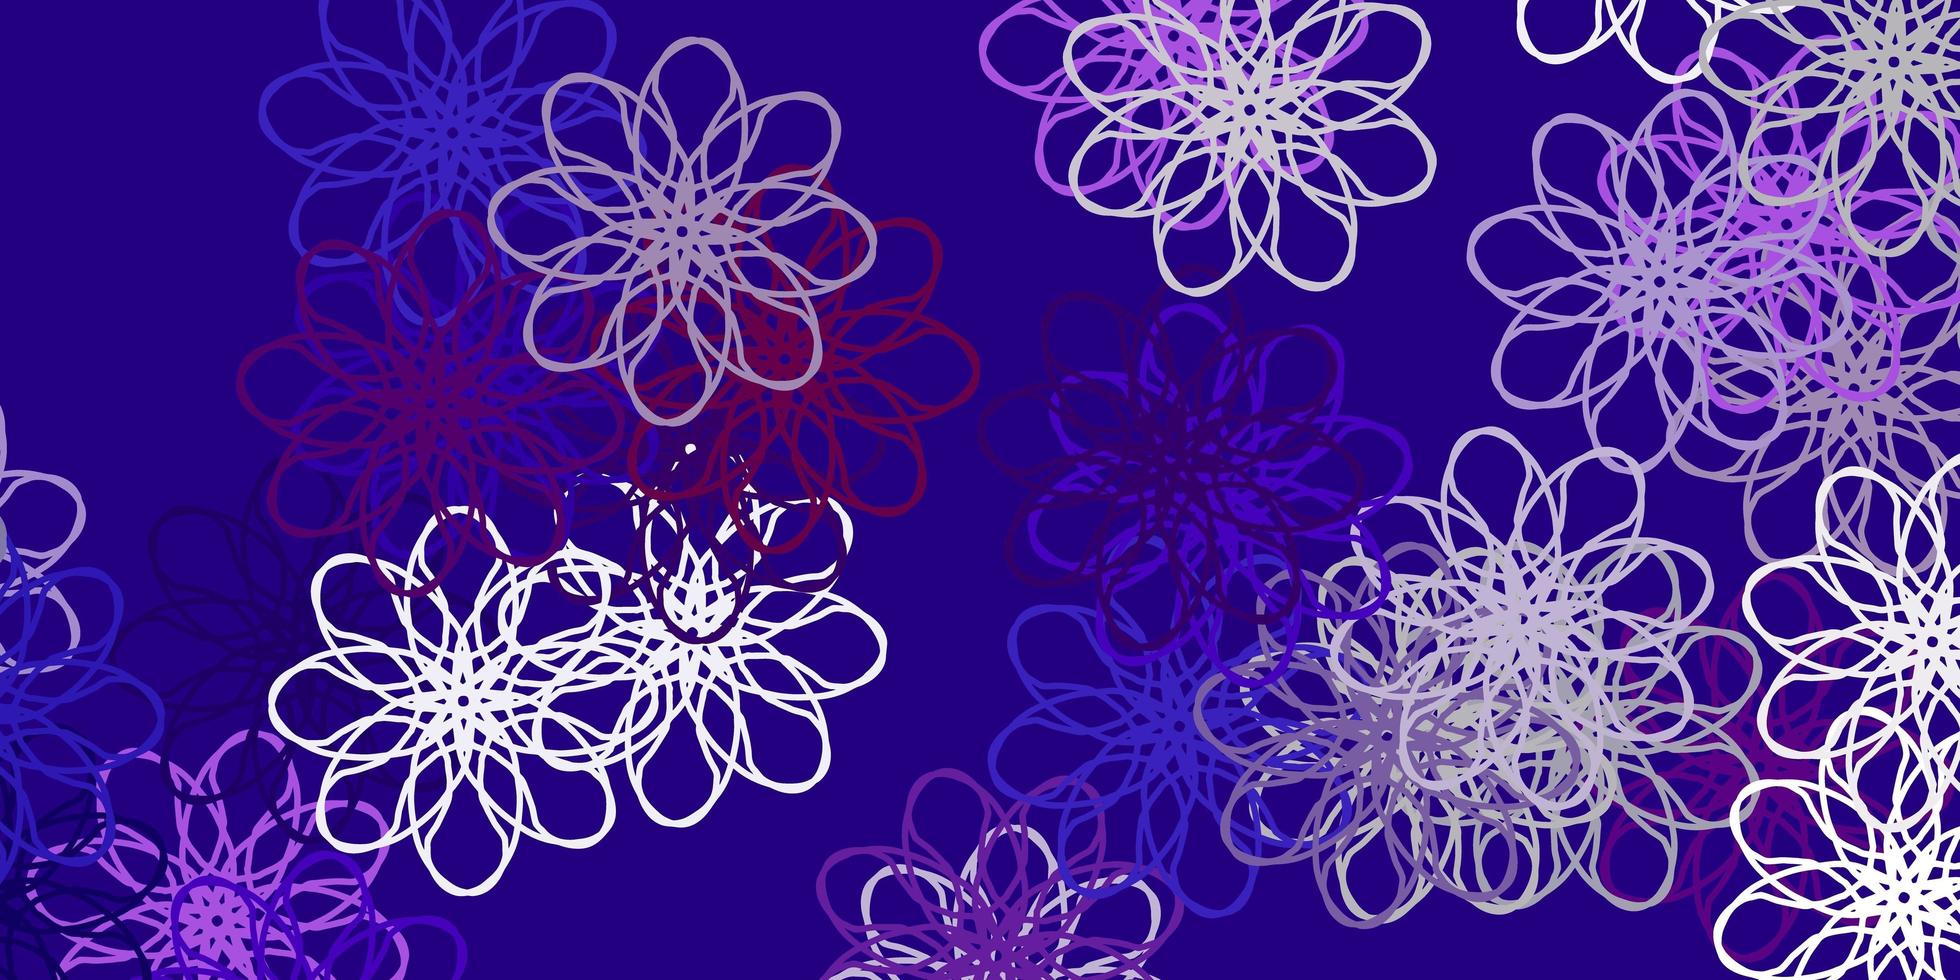 layout naturale vettoriale viola chiaro con fiori.